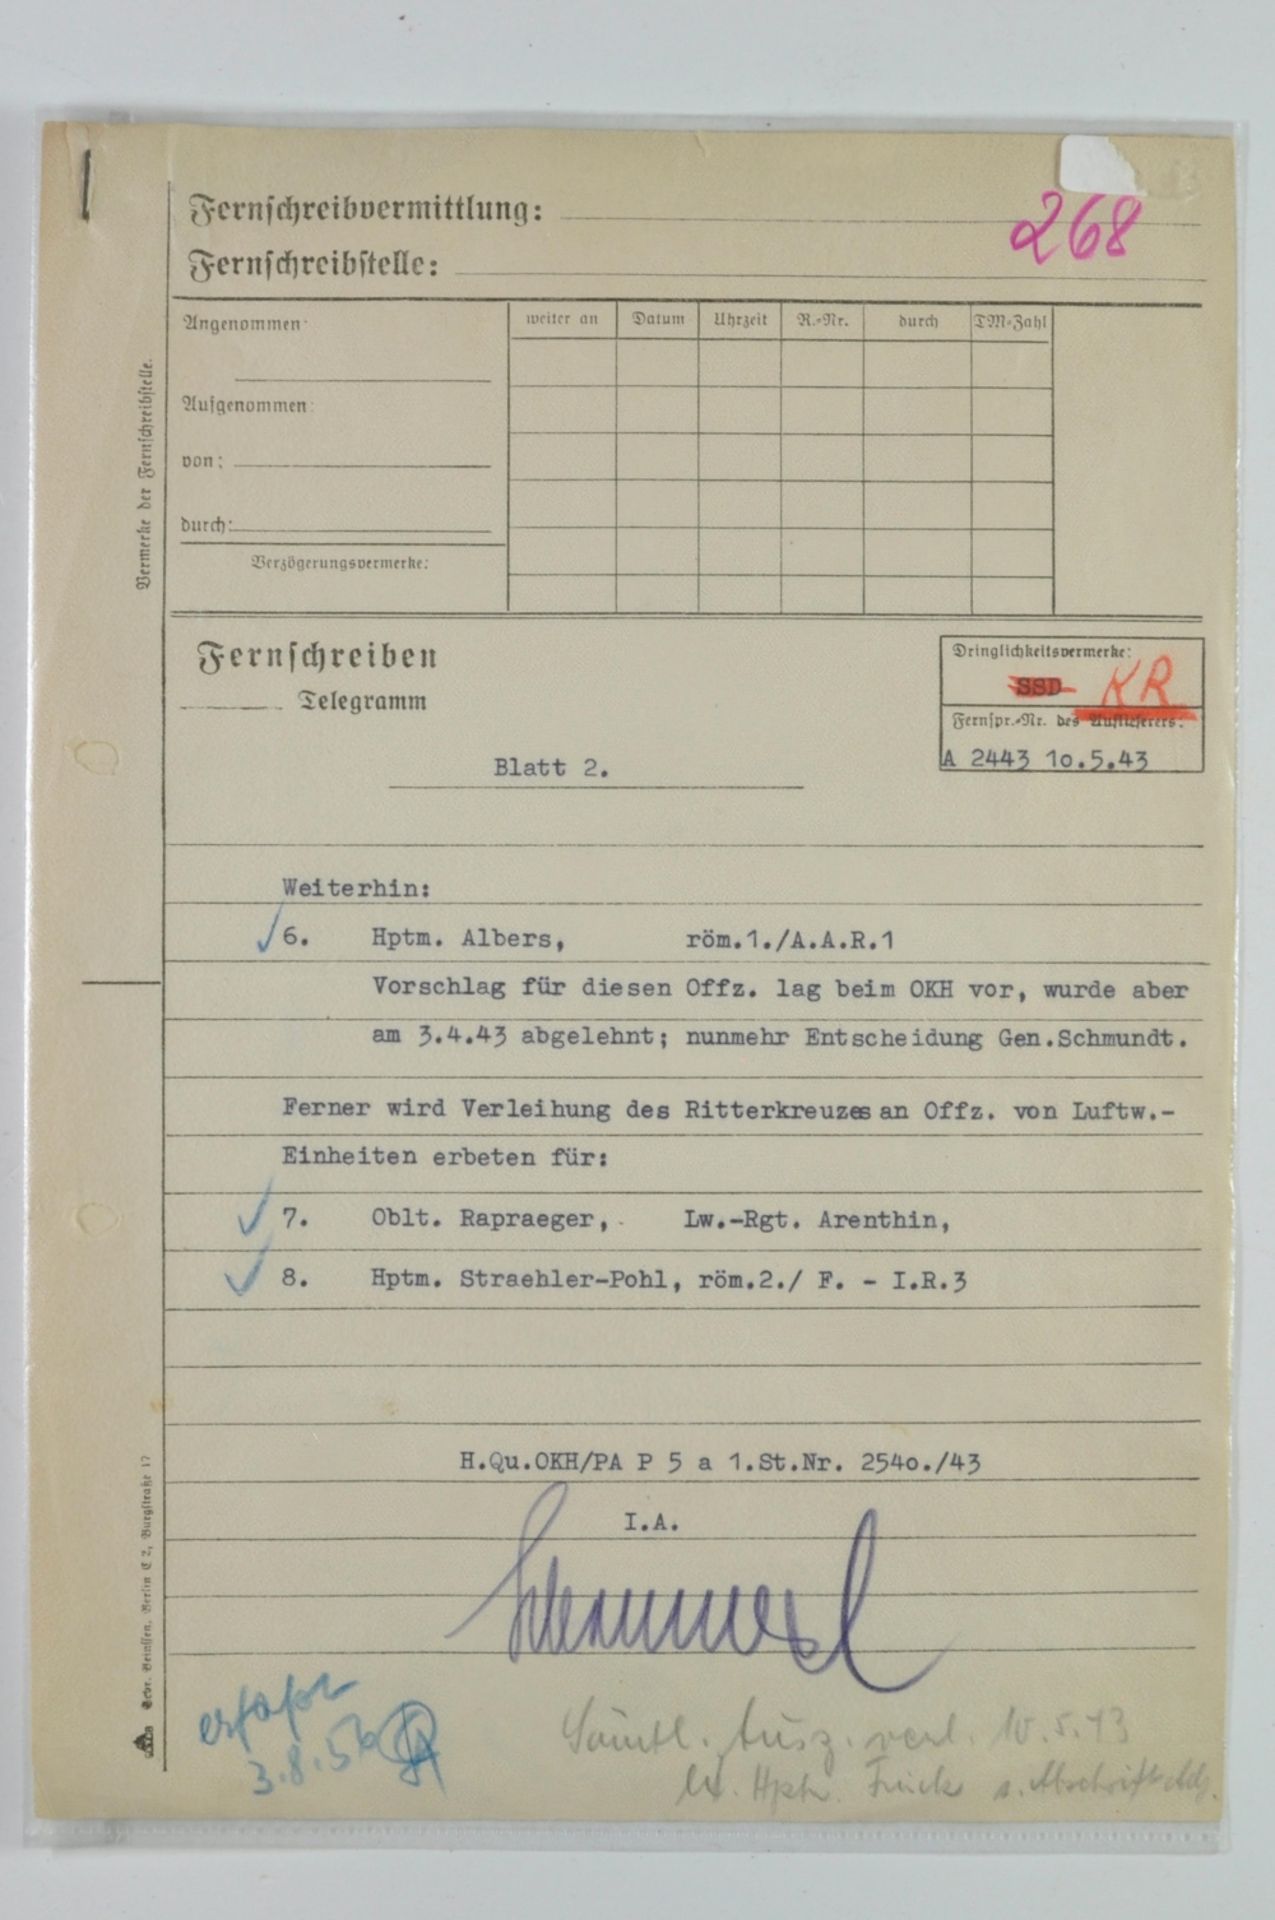 Fernschreiben Telegramm an den Chef-Adj. beim Führer Gen.Lt. Schmundt vom 10.5.43 mit der Bitte des